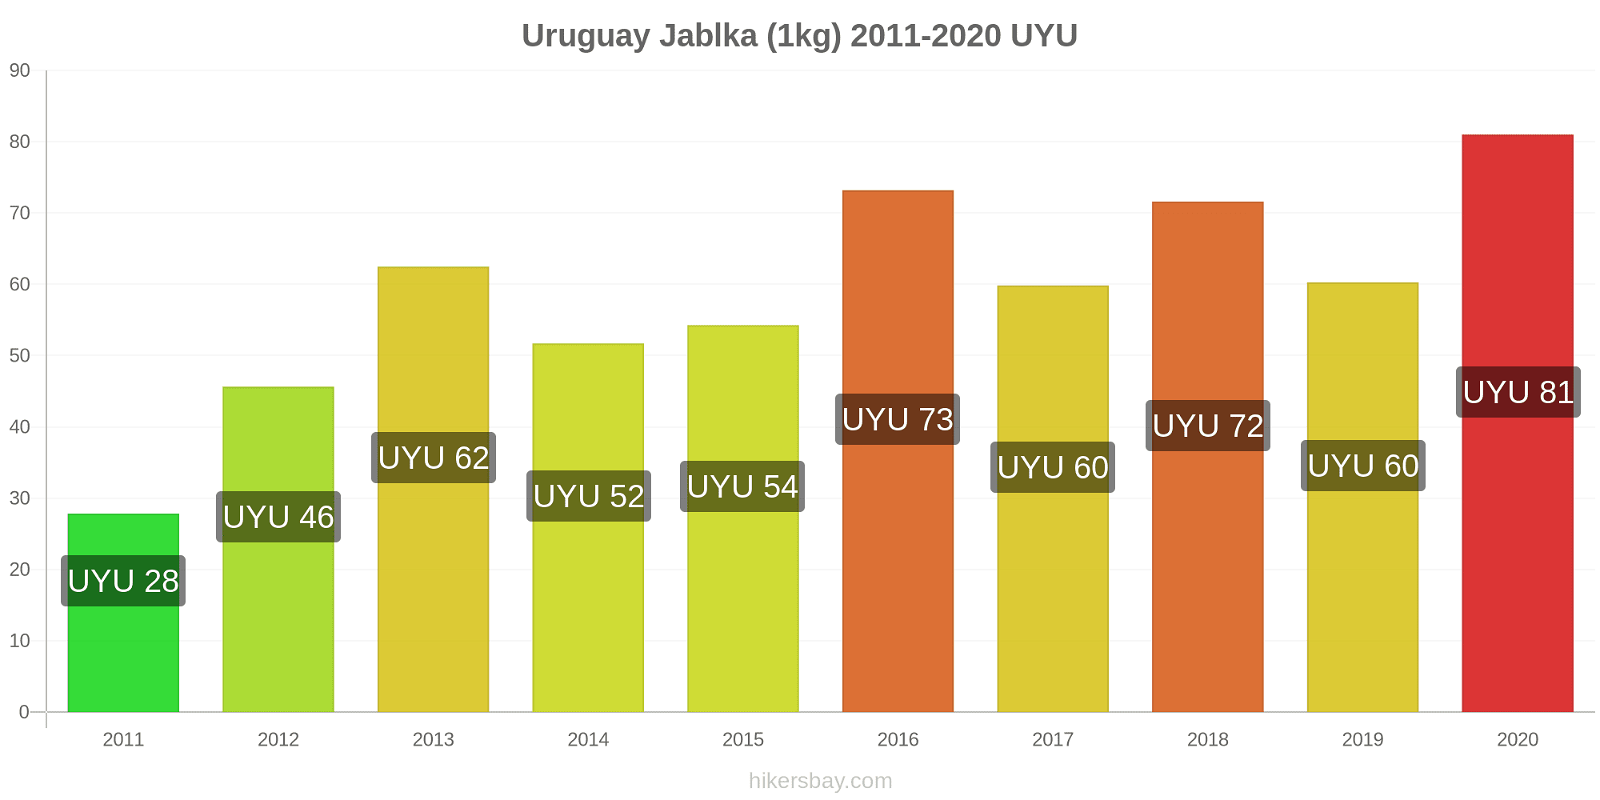 Uruguay změny cen Jablka (1kg) hikersbay.com